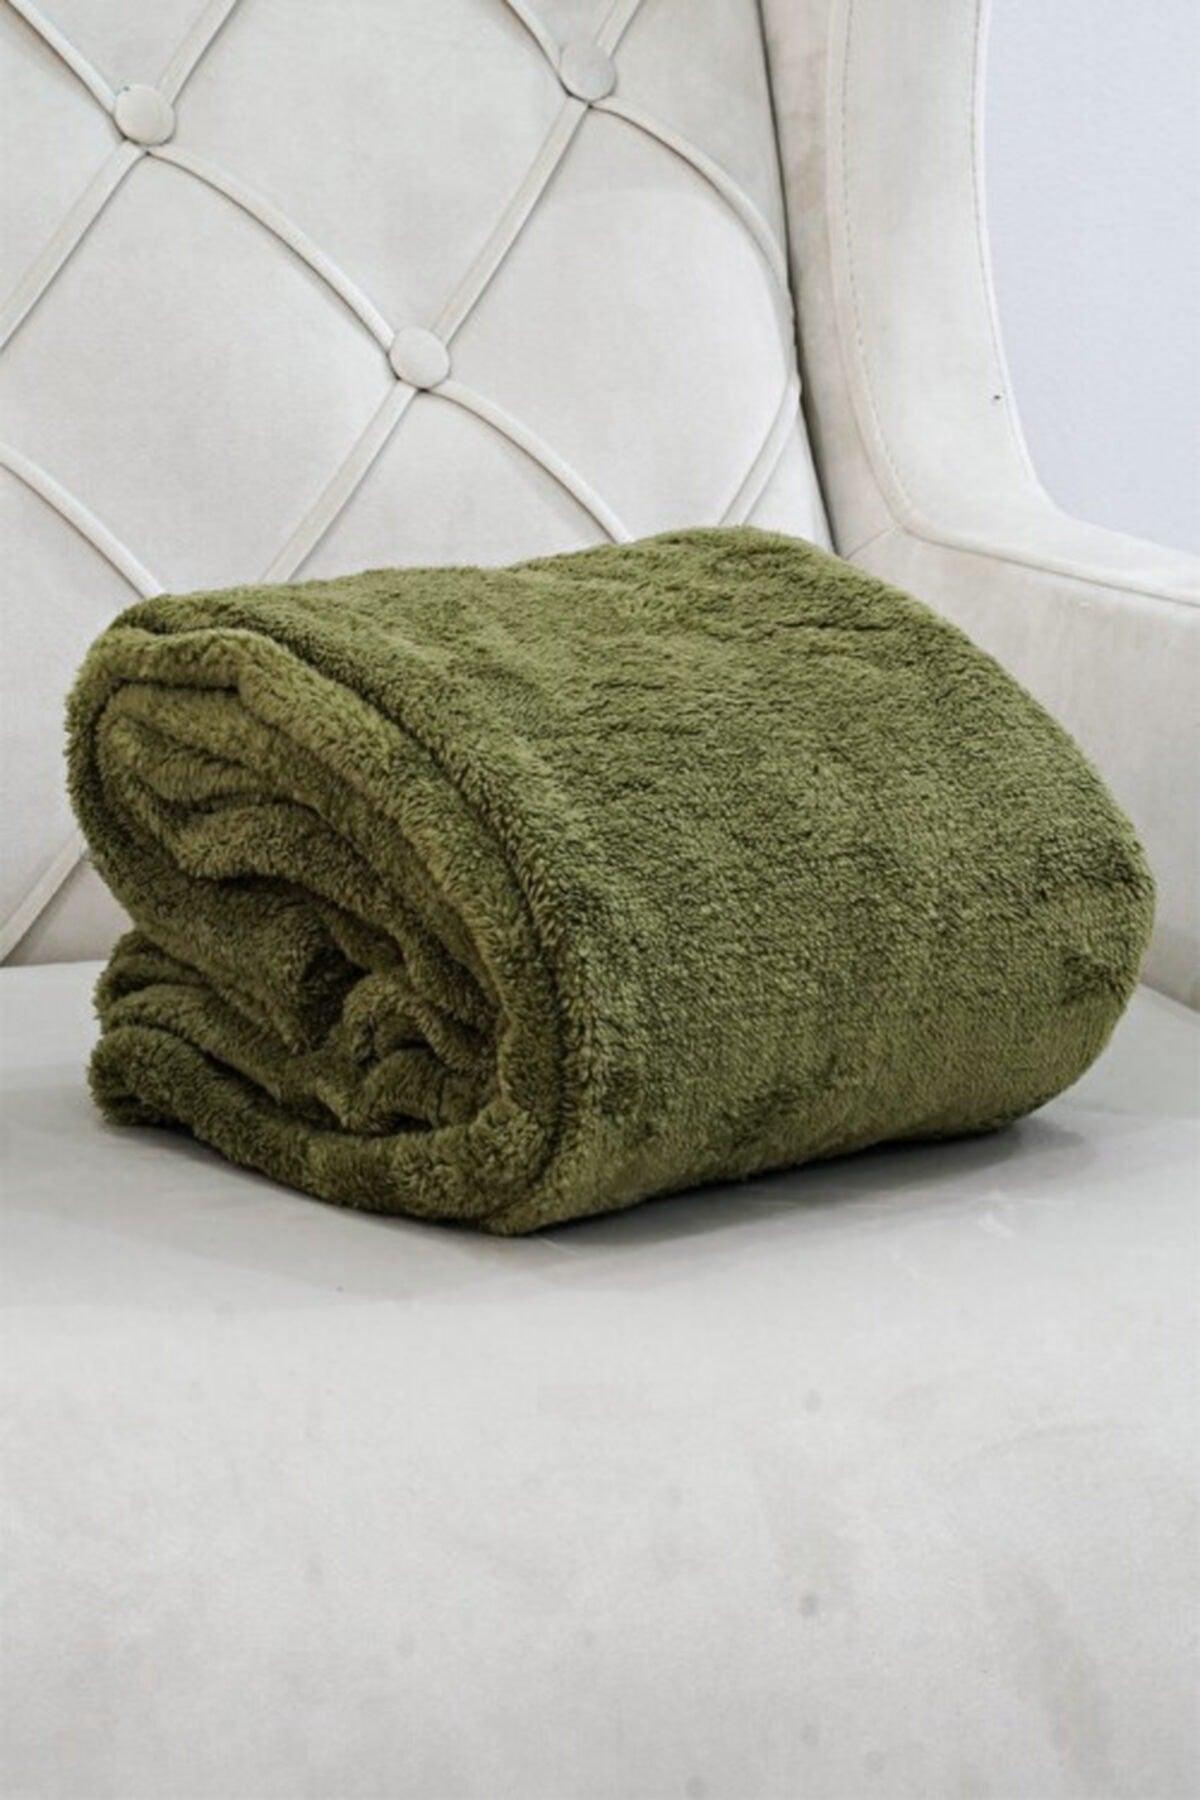 Wellsoft Blanket Television Blanket Plush Fleece Blanket Single 170*230 Khaki - Swordslife